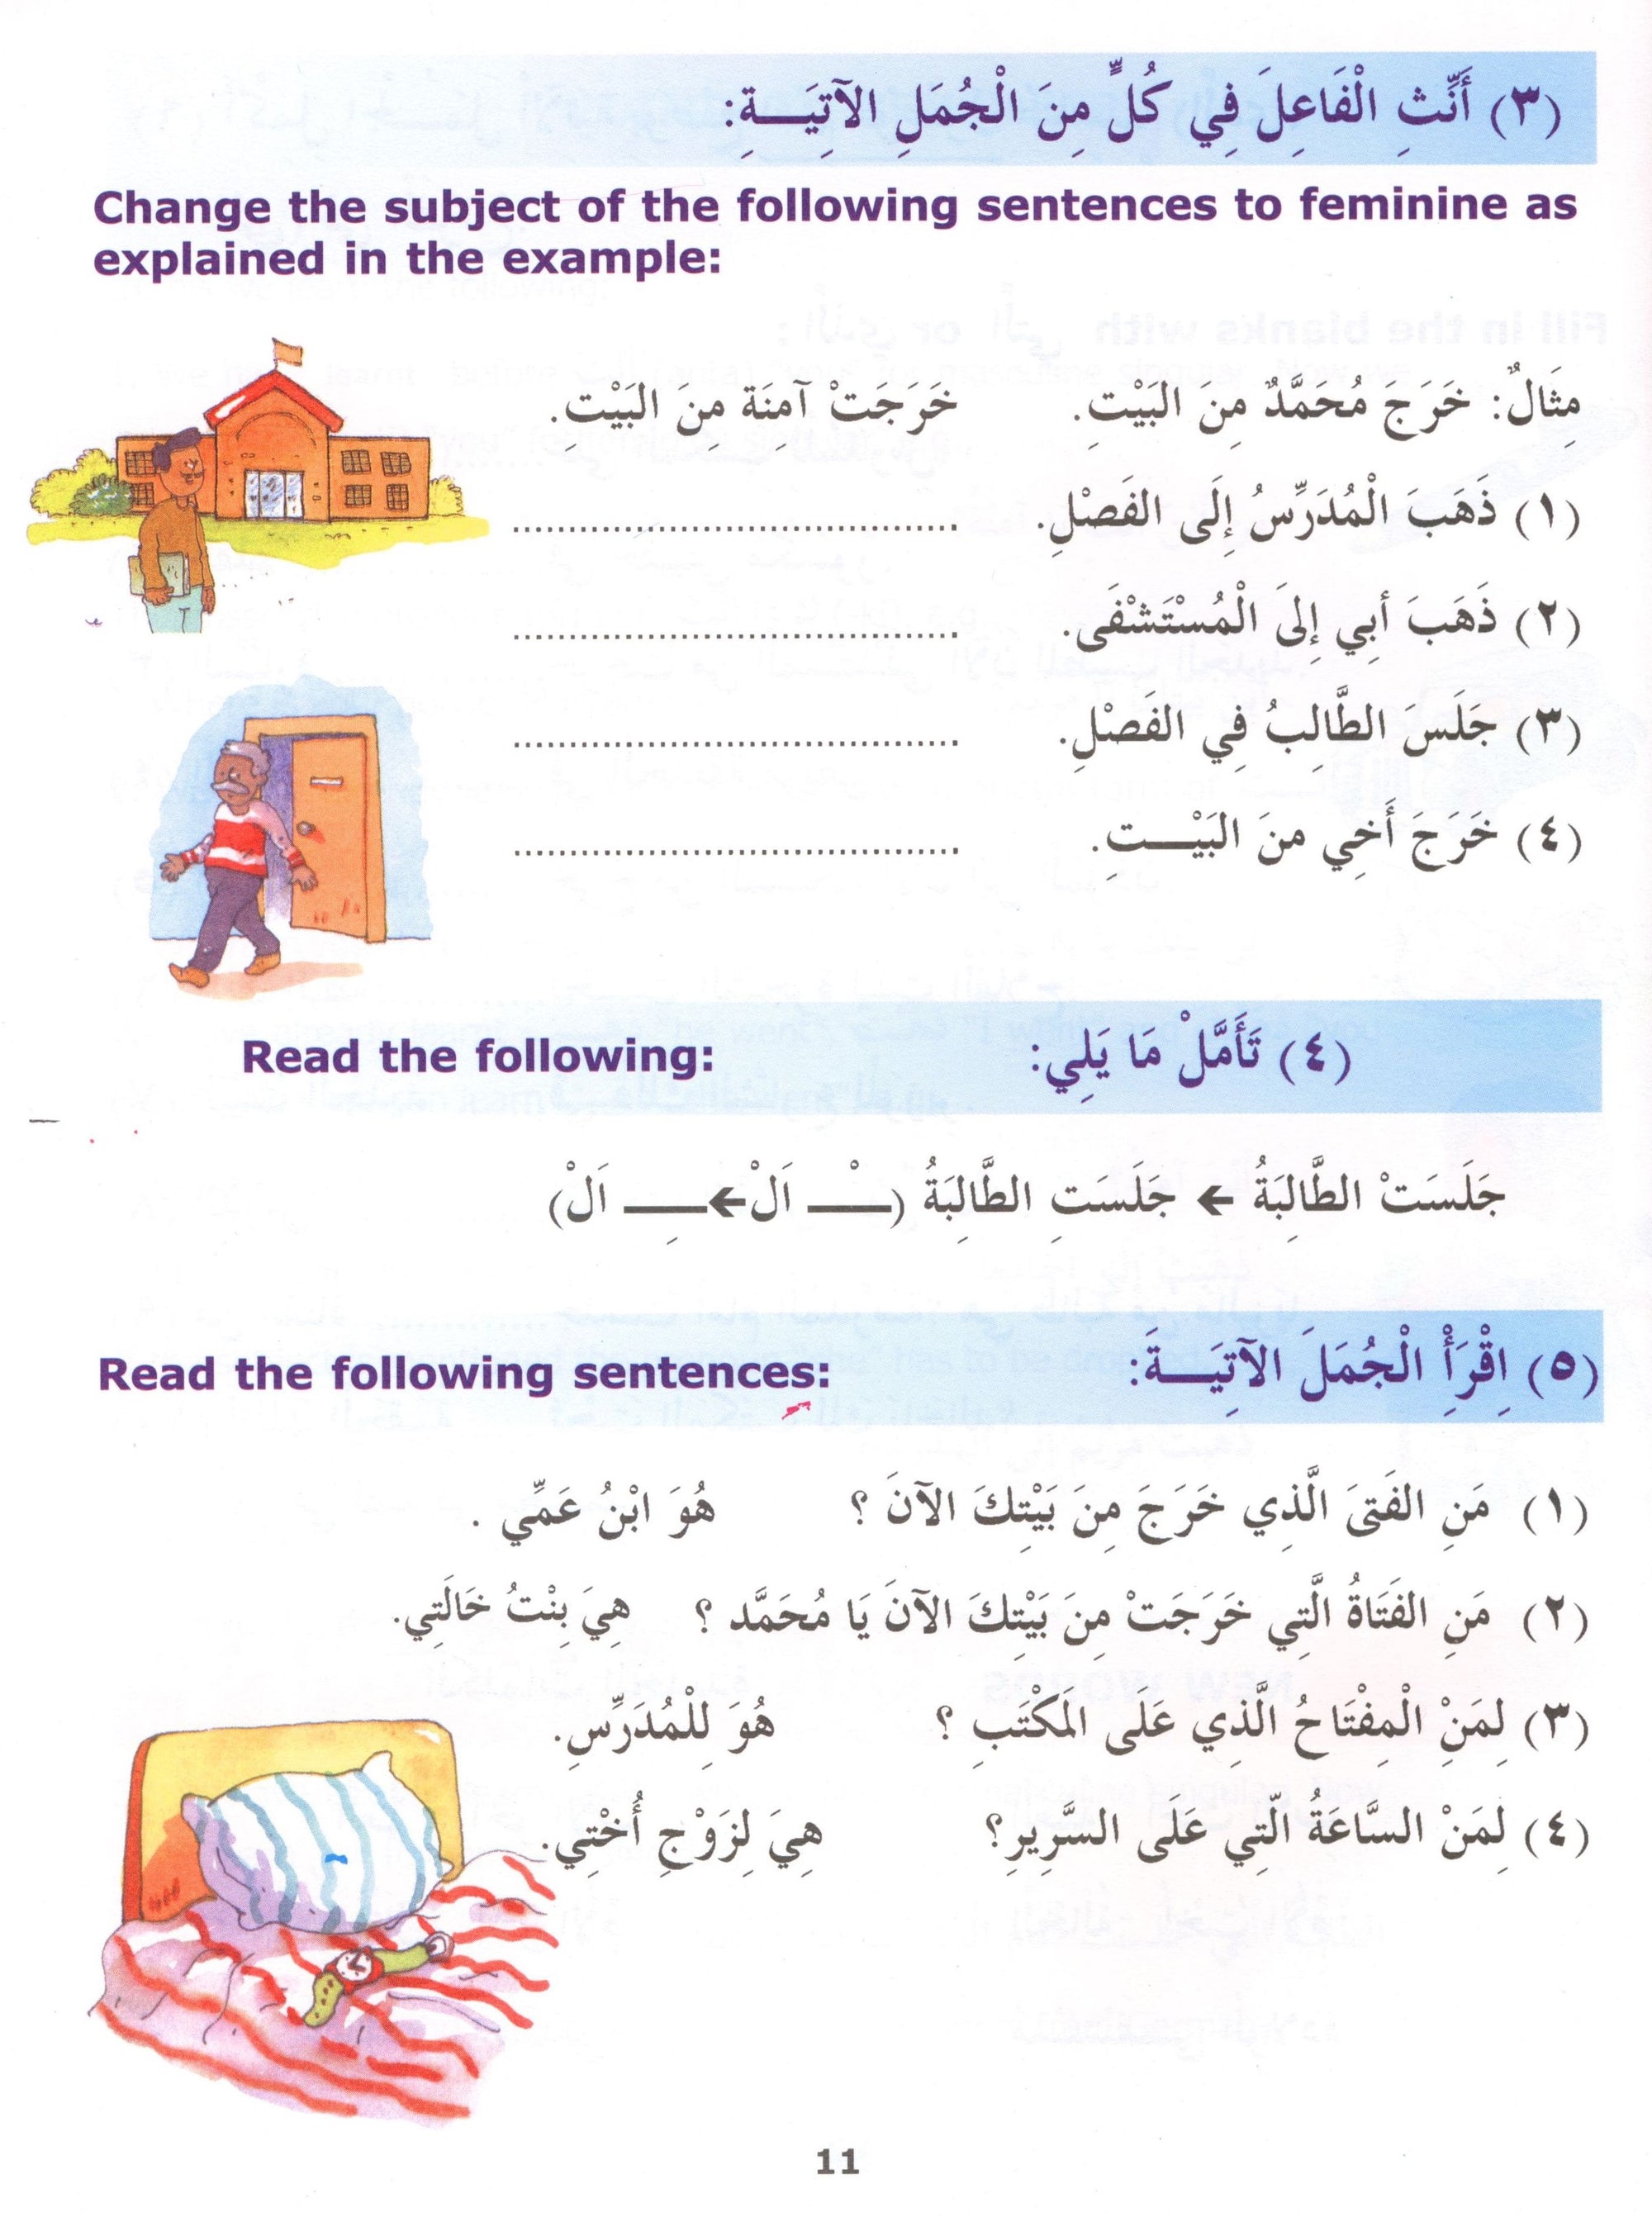 Madinah Arabic Reader Book 2